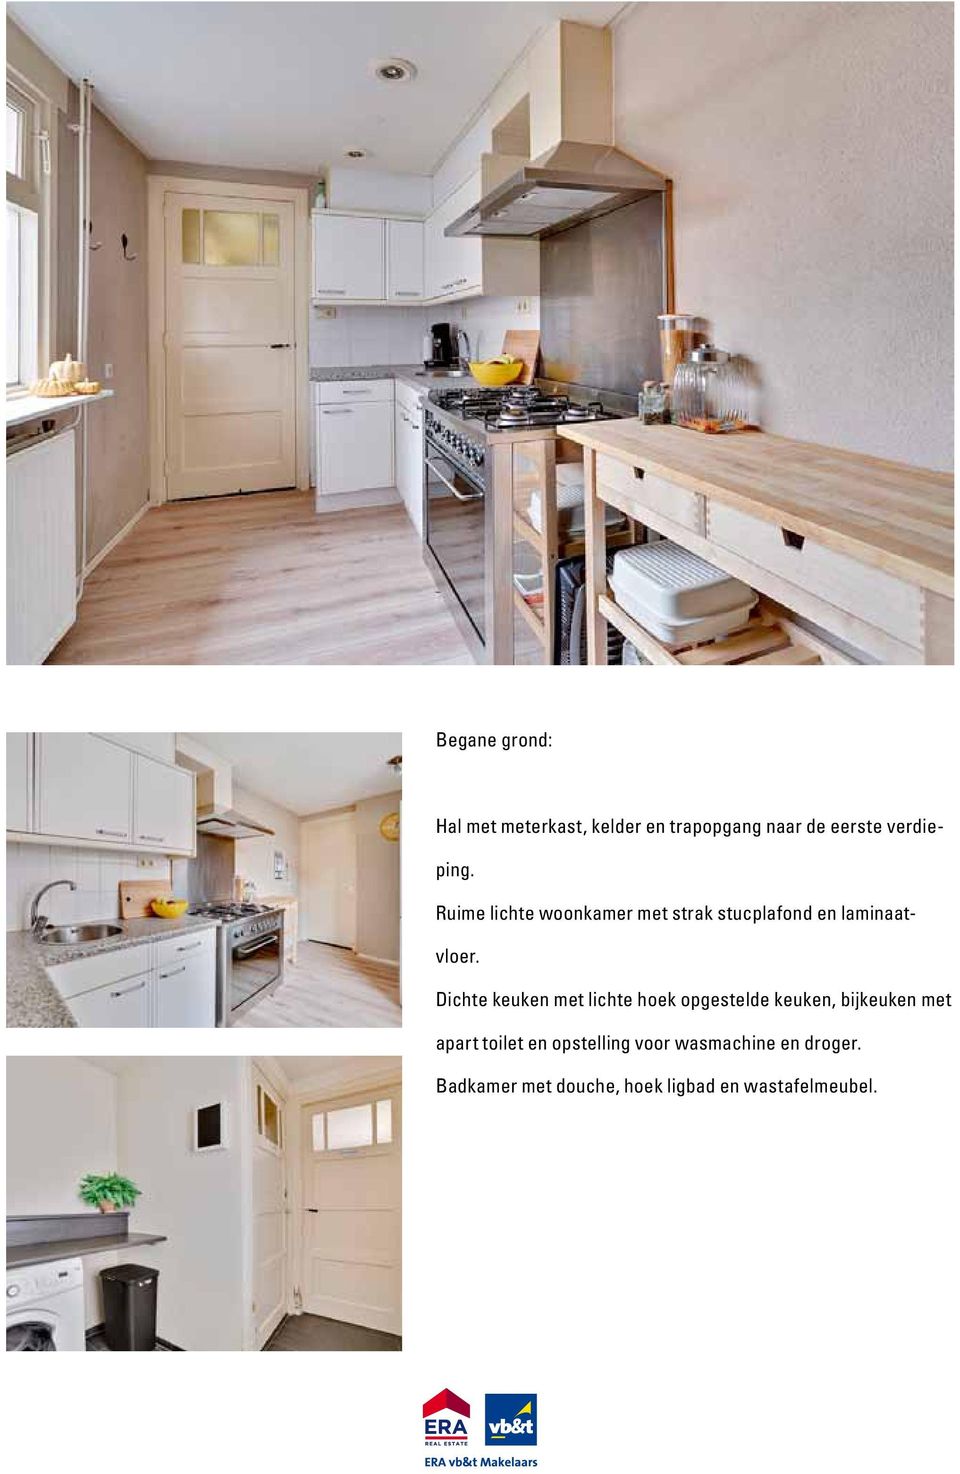 Dichte keuken met lichte hoek opgestelde keuken, bijkeuken met apart toilet